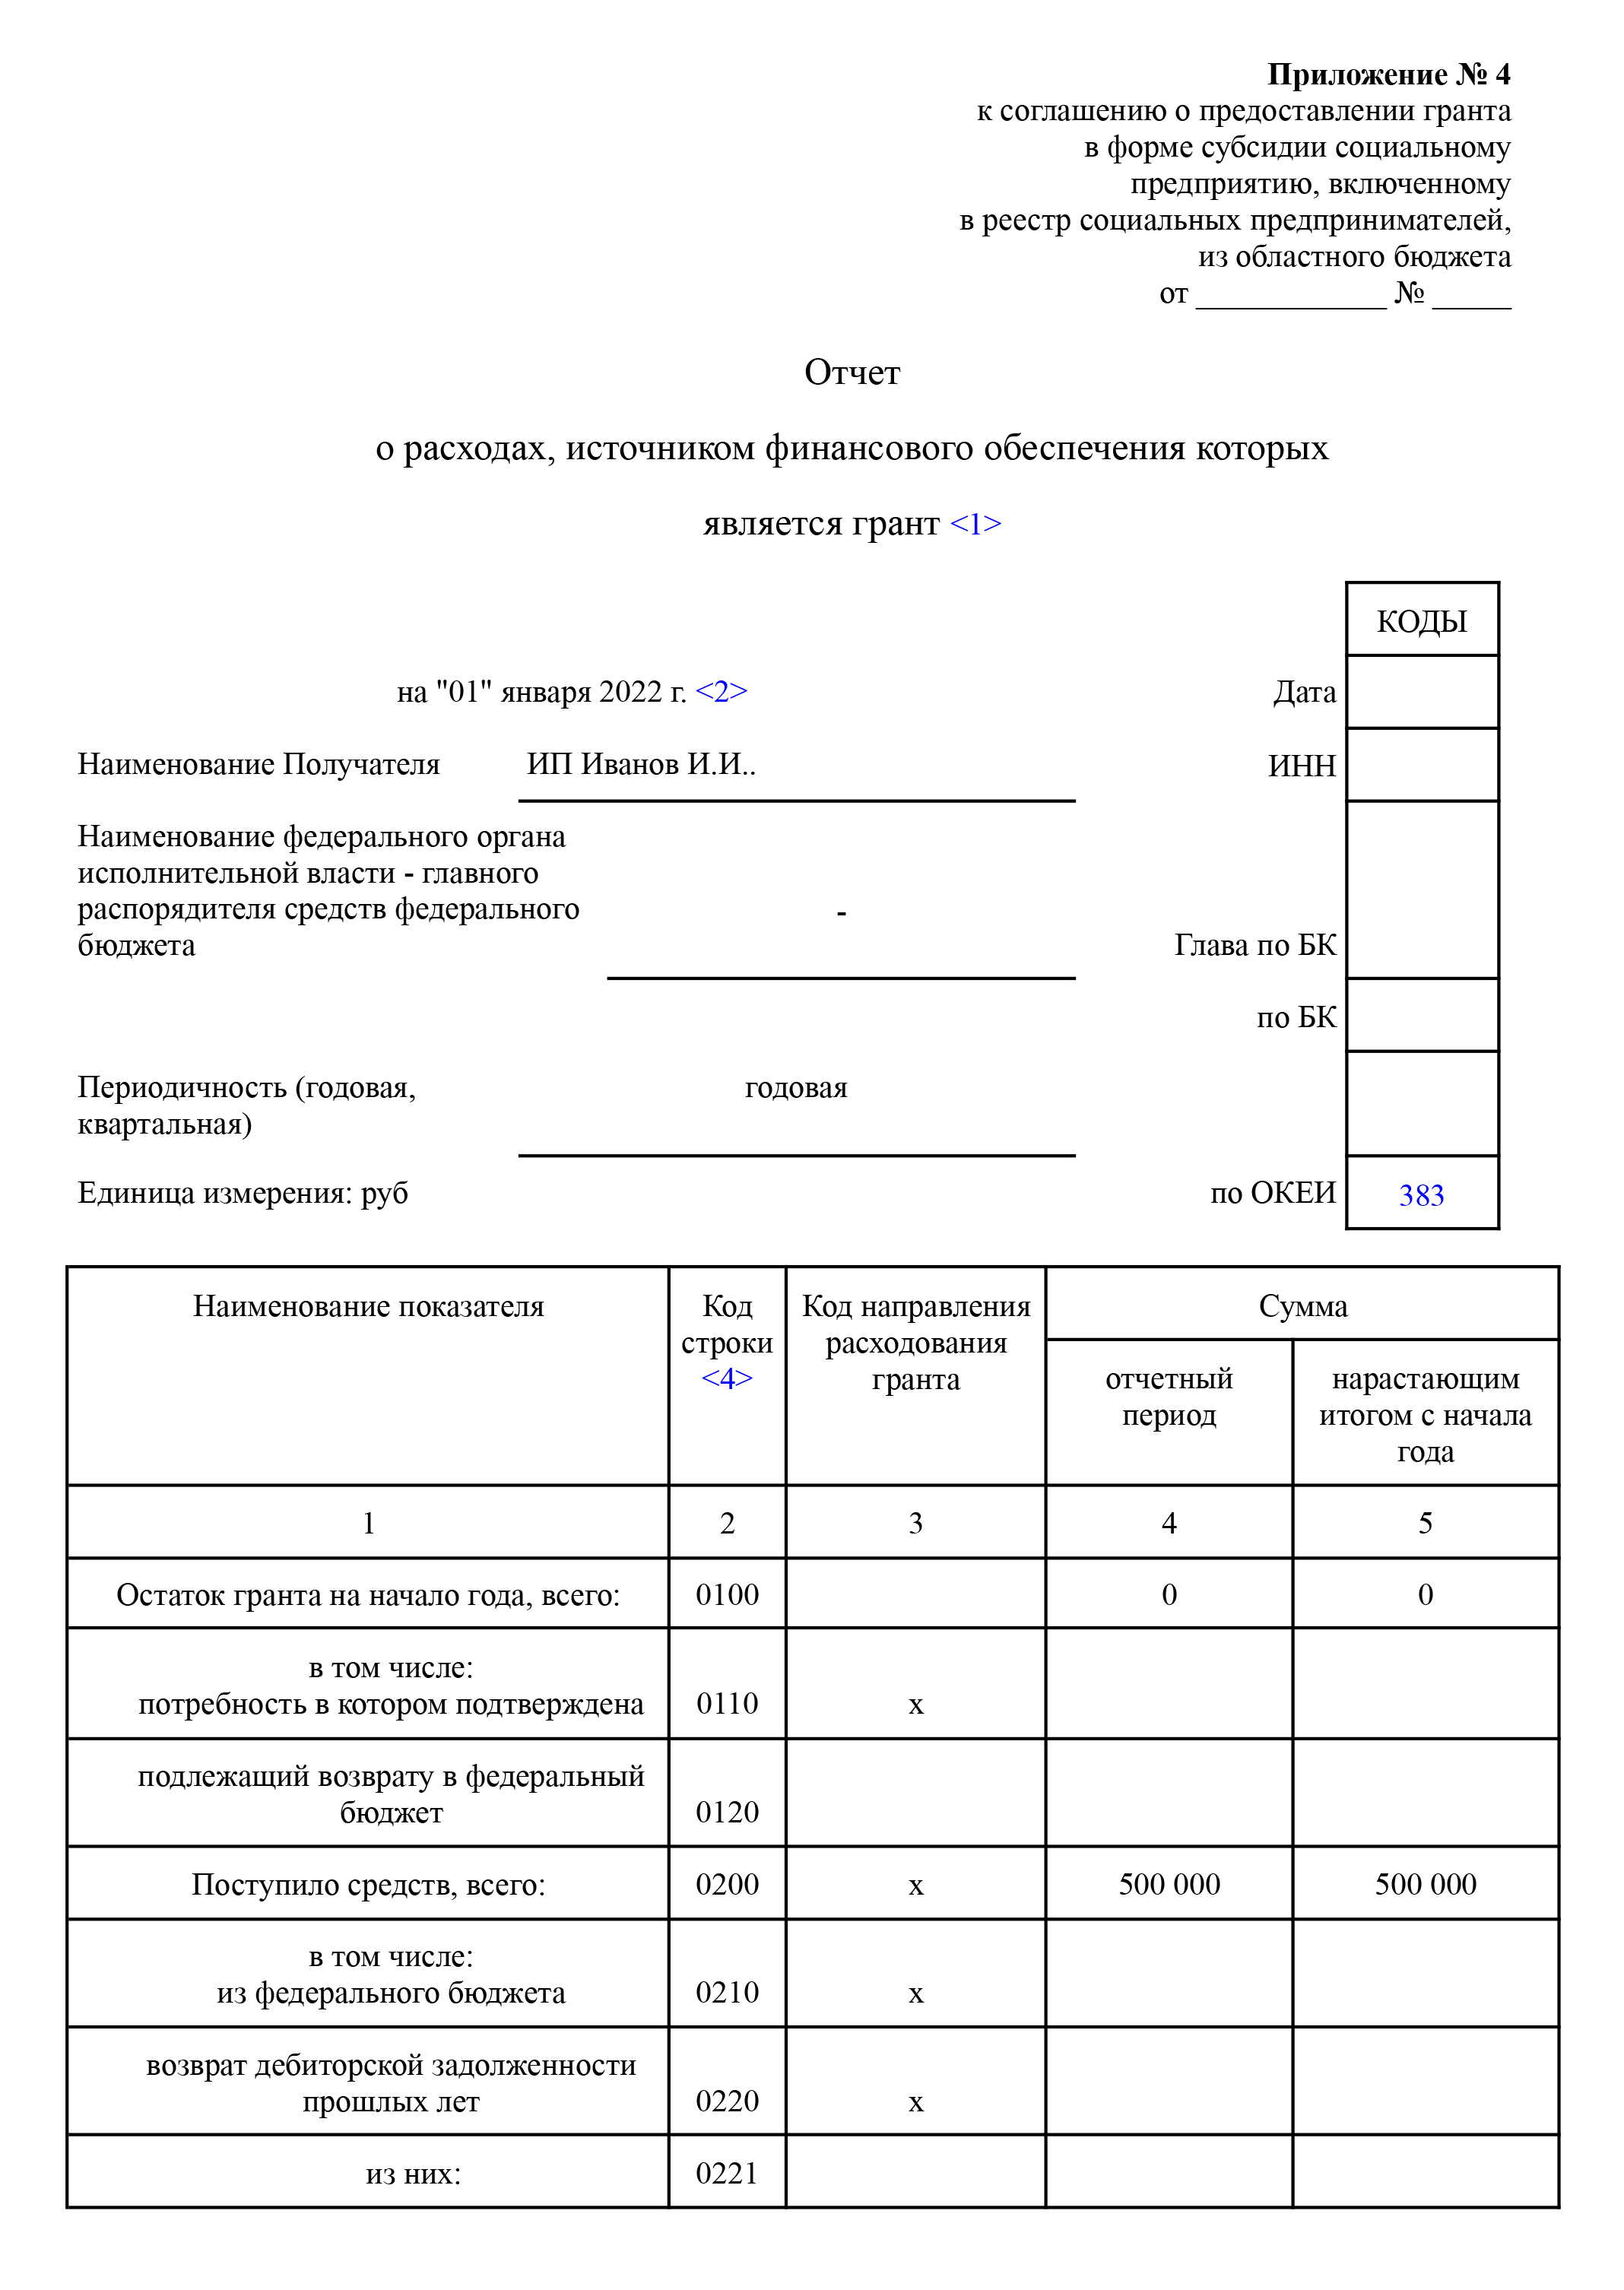 Так выглядит отчет об использовании гранта. Минпром Нижегородской области сделал документ с подсказками по его заполнению — вот он